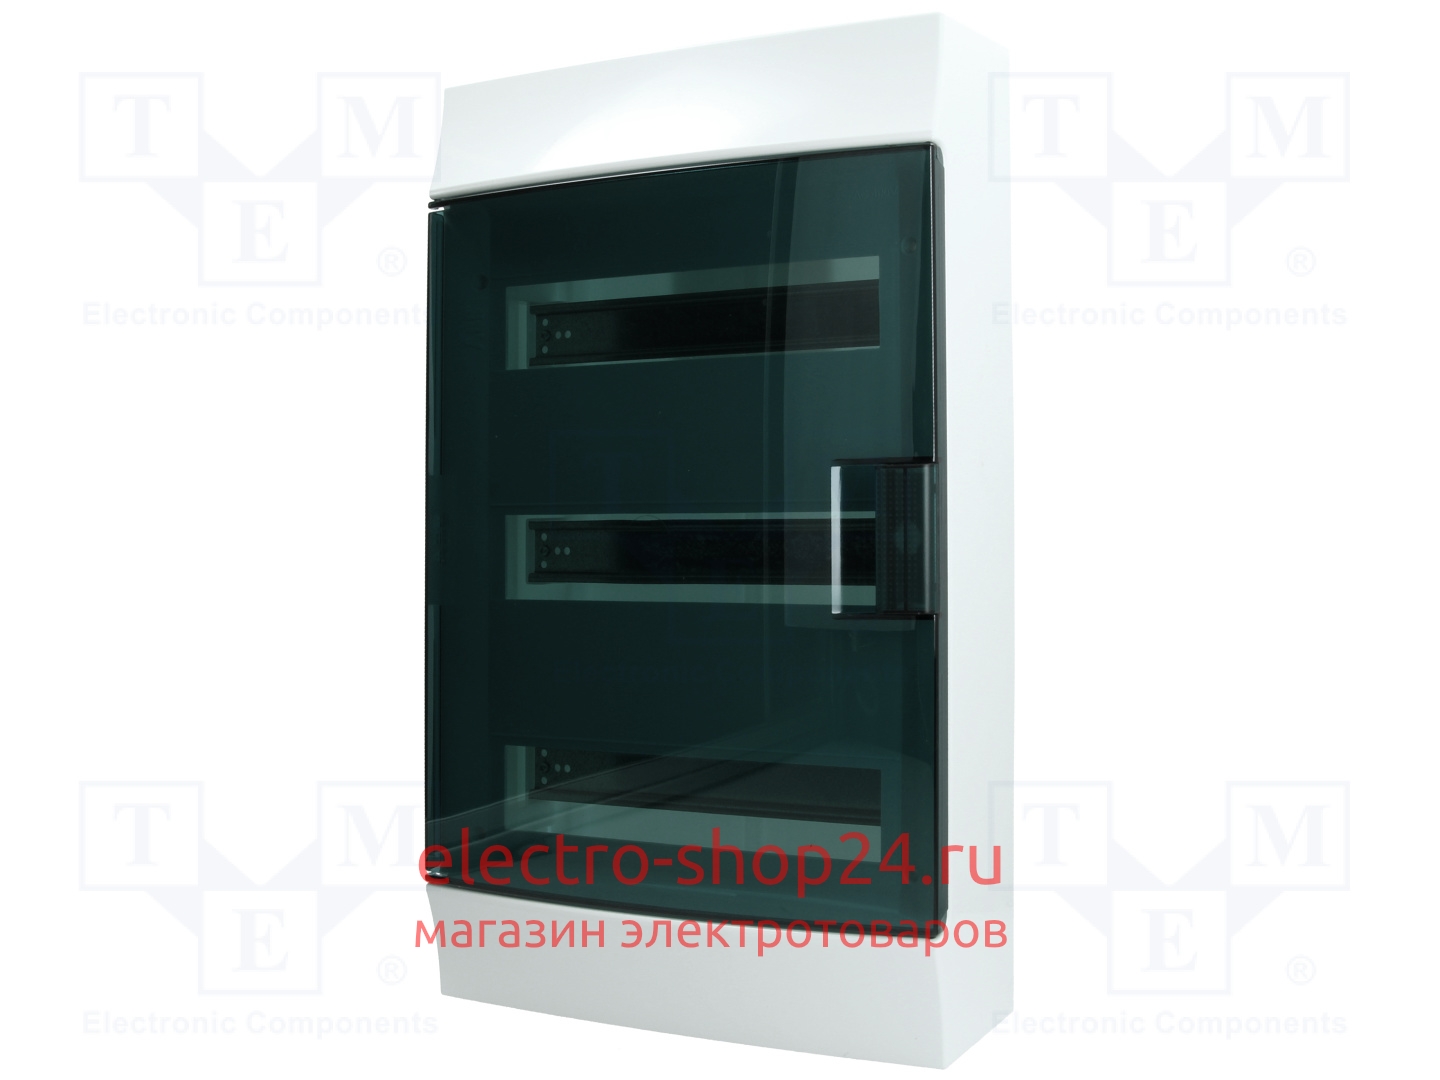 Бокс настенный ABB Mistral41 36М модулей (3x12) прозрачная дверь с клеммным блоком 1SPE007717F9994 1SPE007717F9994 - магазин электротехники Electroshop